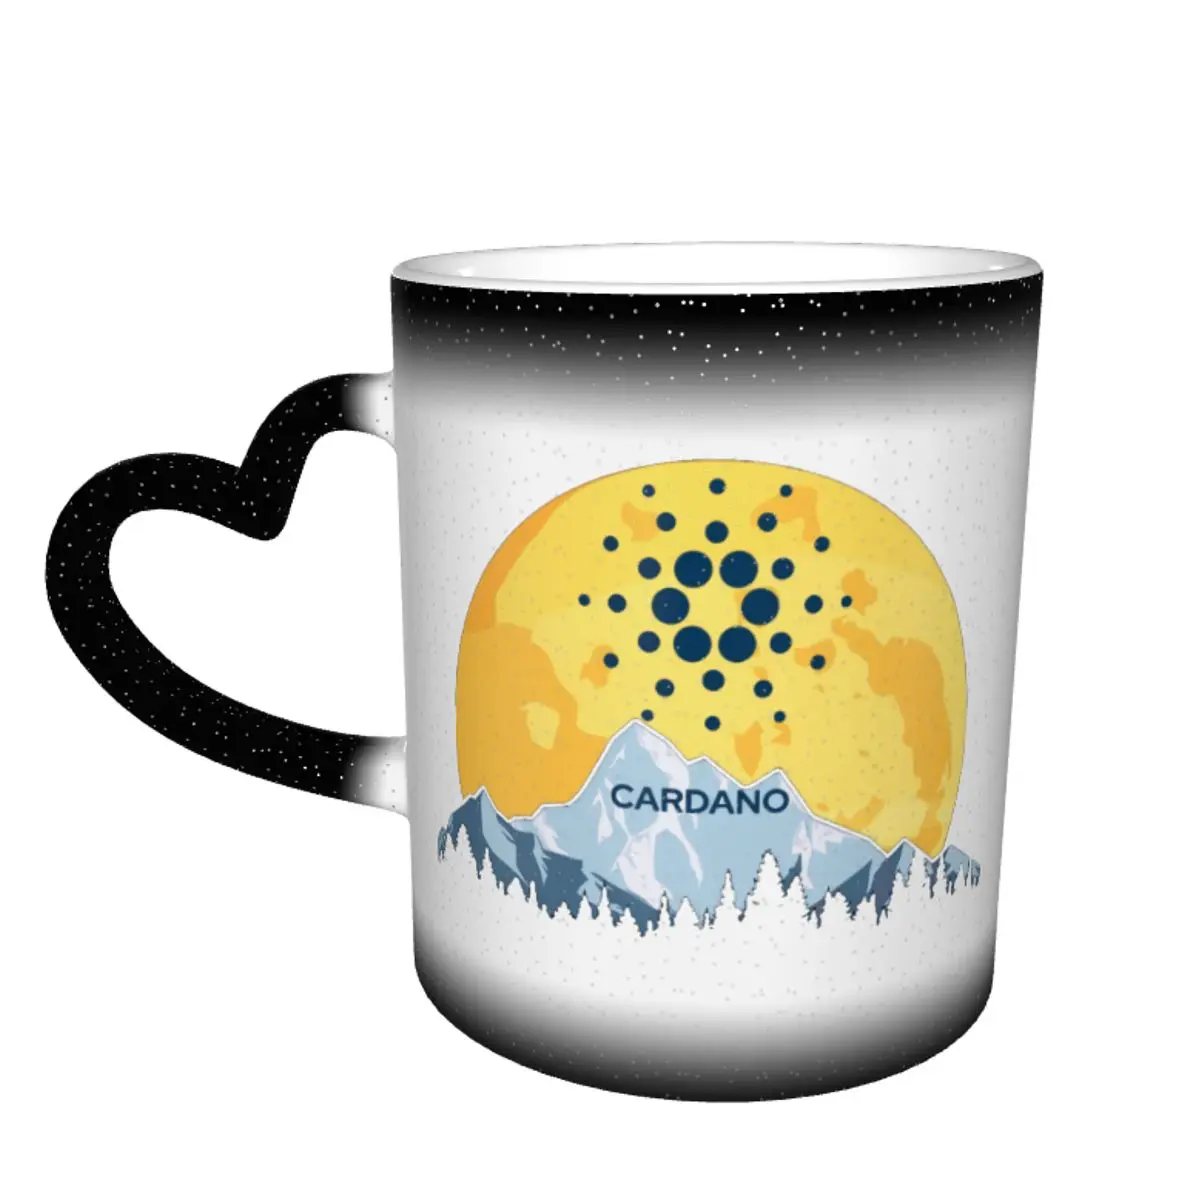 

Кружка с изменением цвета в небе, симпатичная кружка с изображением Кардано Ада на Луну Керамическая Термочувствительная чашка Tether, забавные чайные чашки Geek